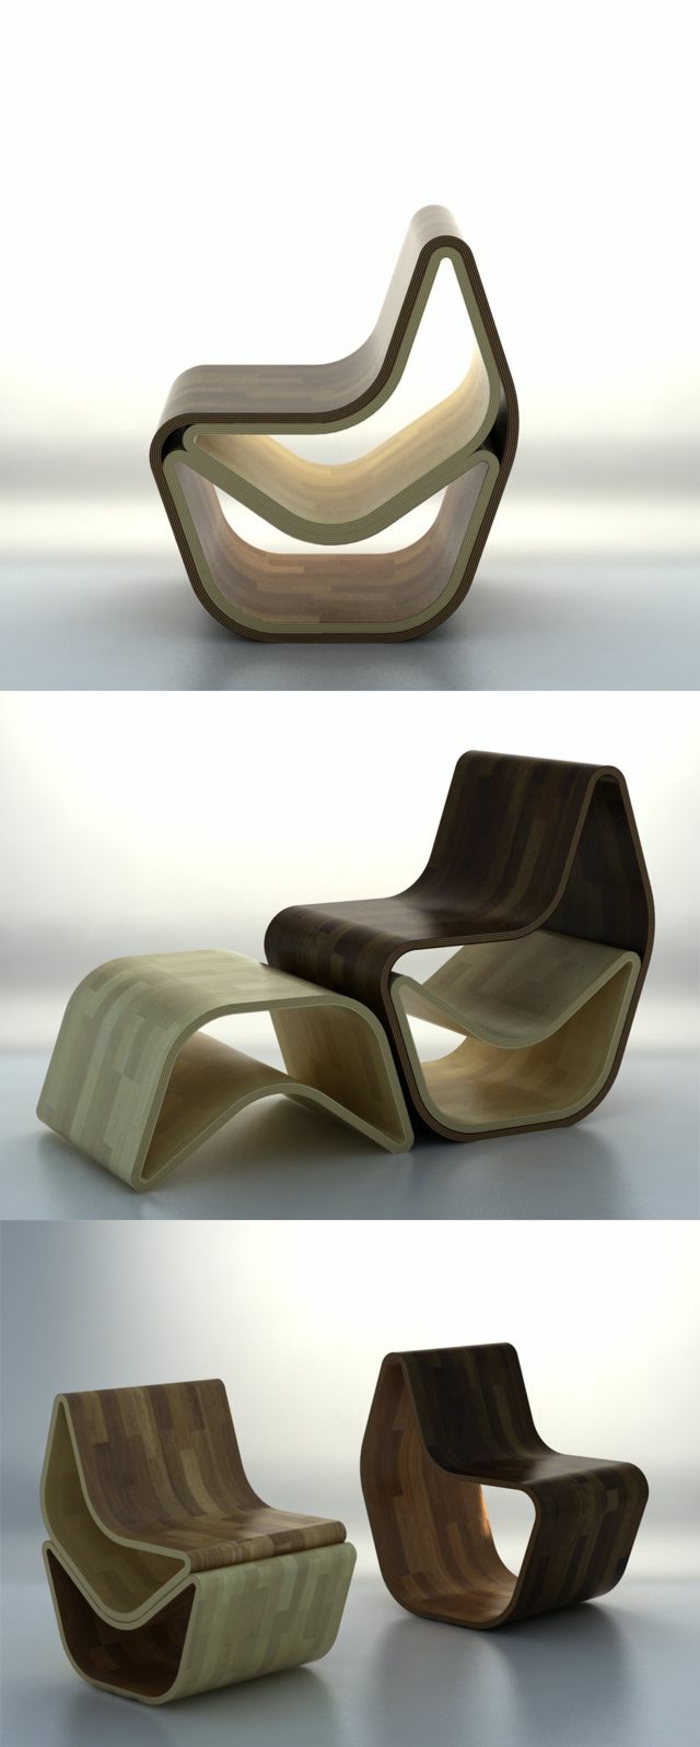 пестящ място-мебели-модерен стол